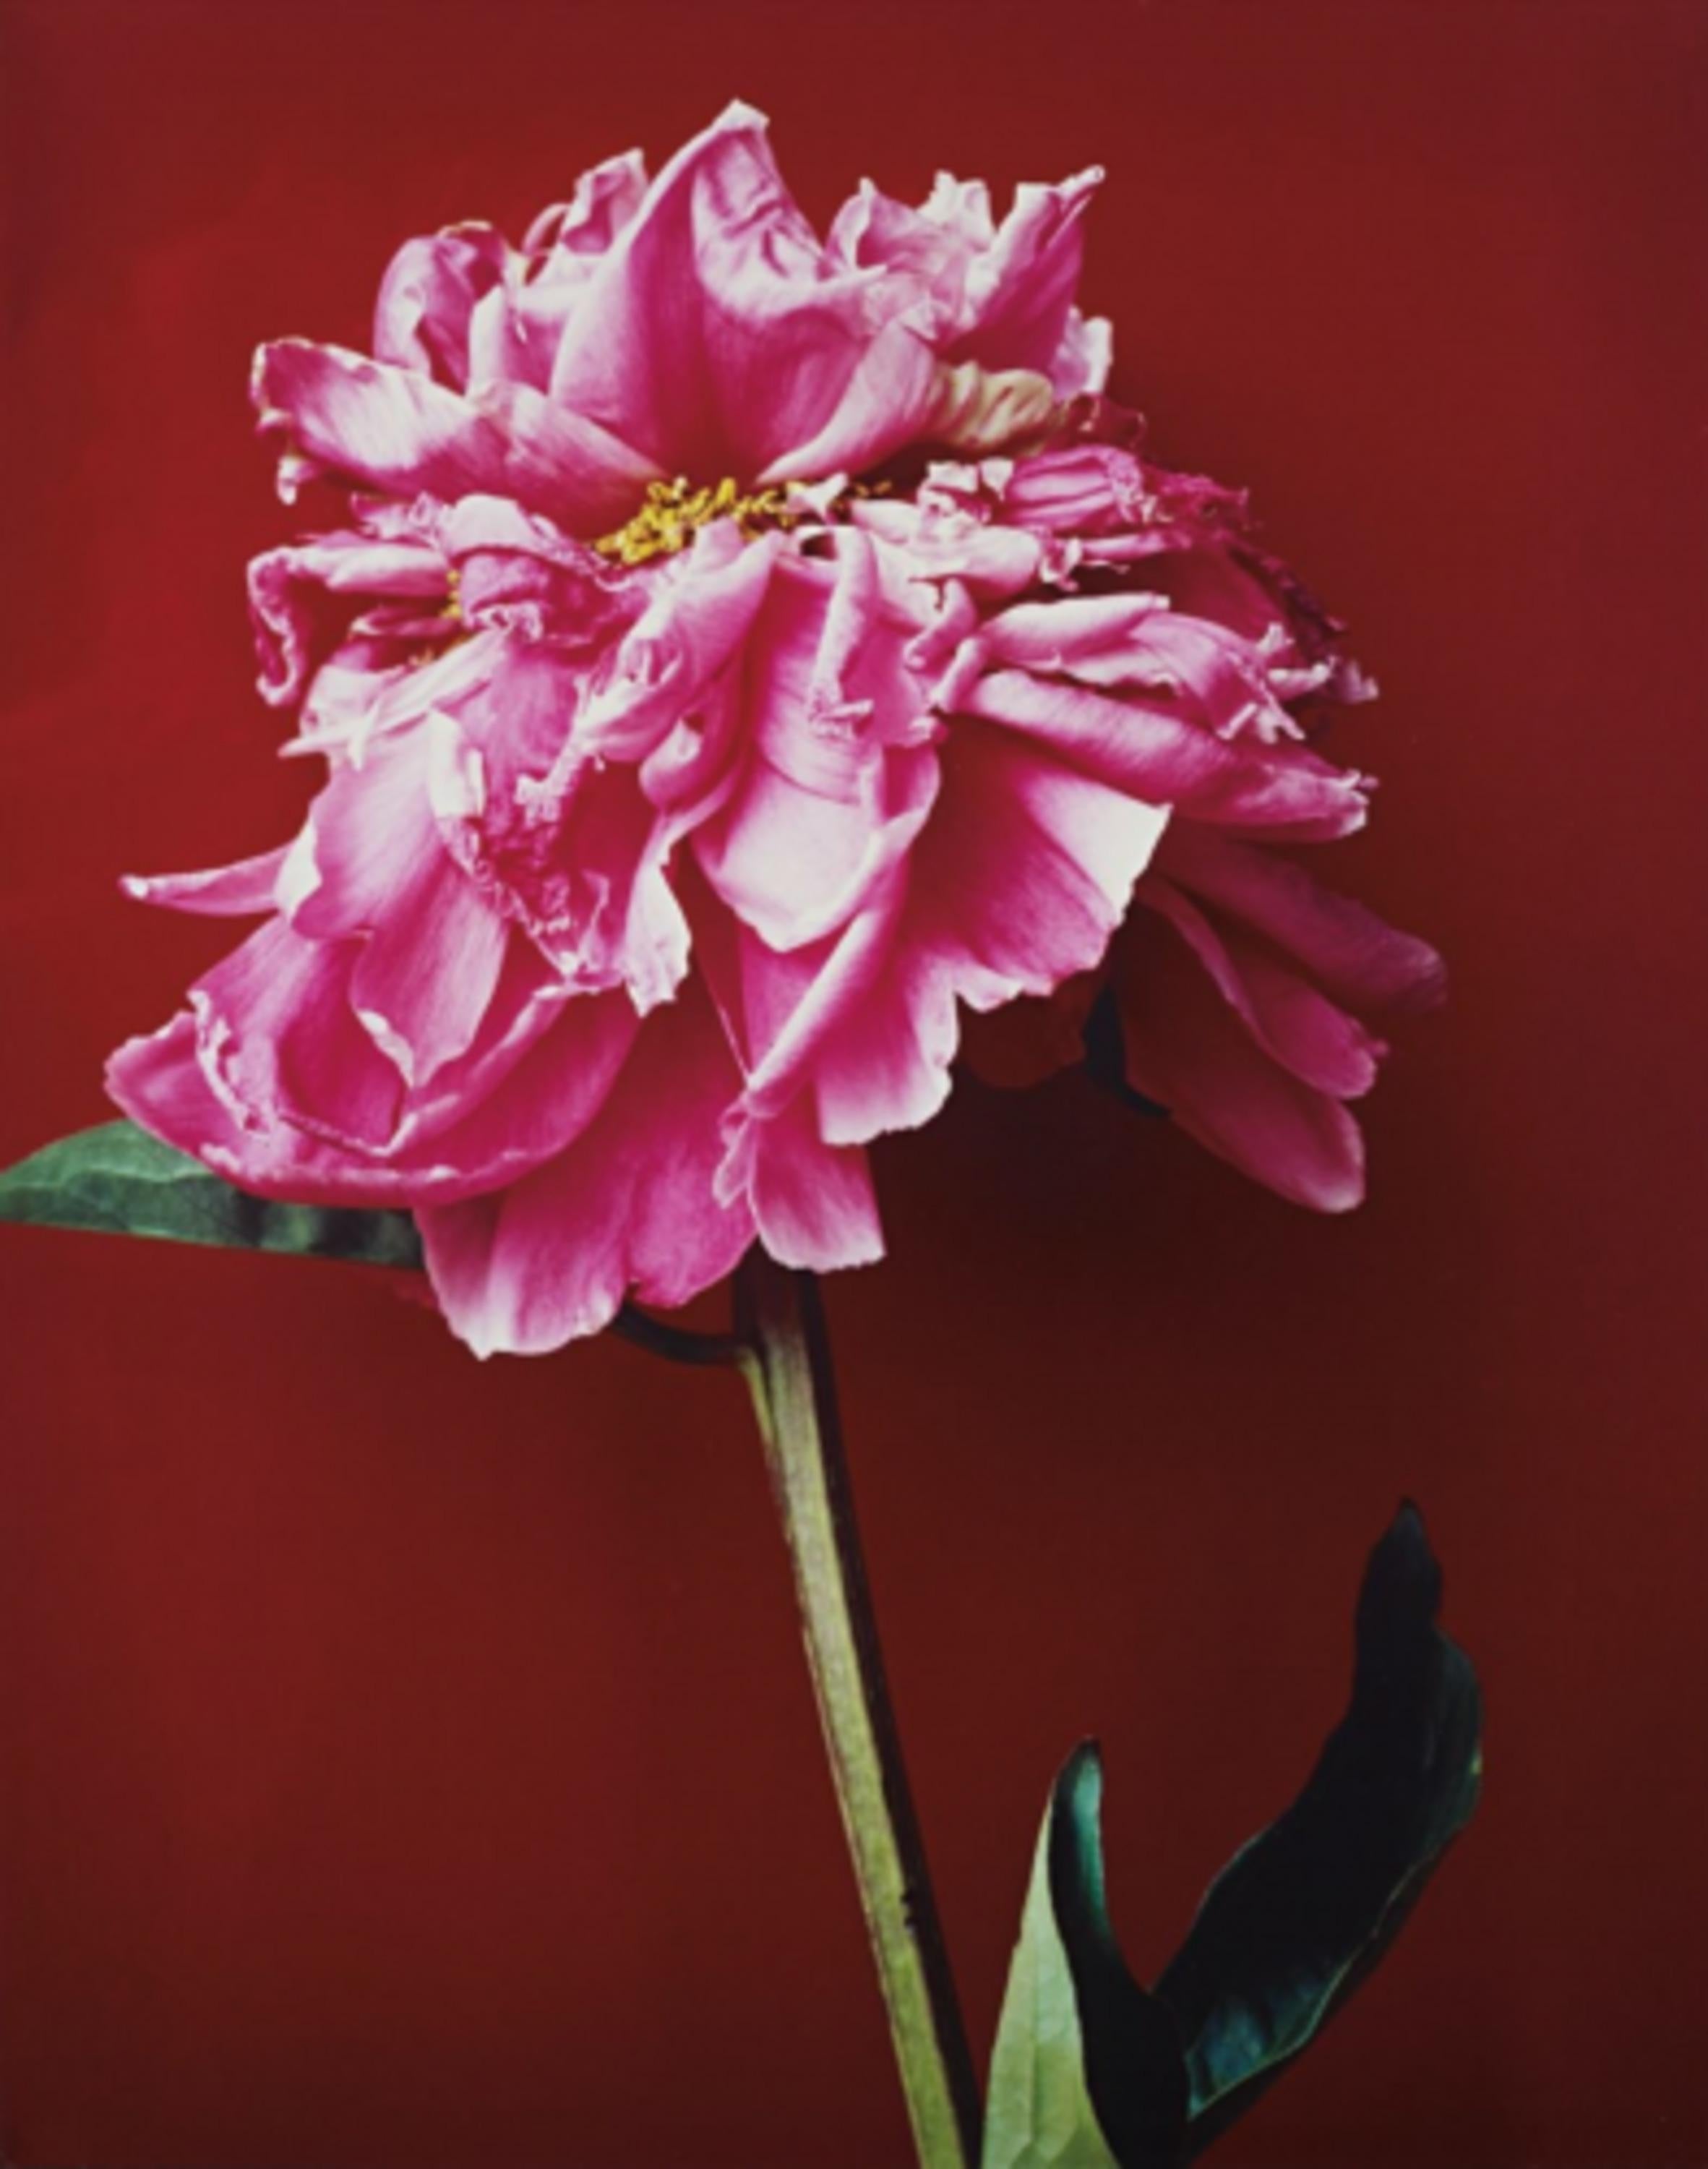 Untitled (Pink Flower) - Photograph by Nobuyoshi Araki